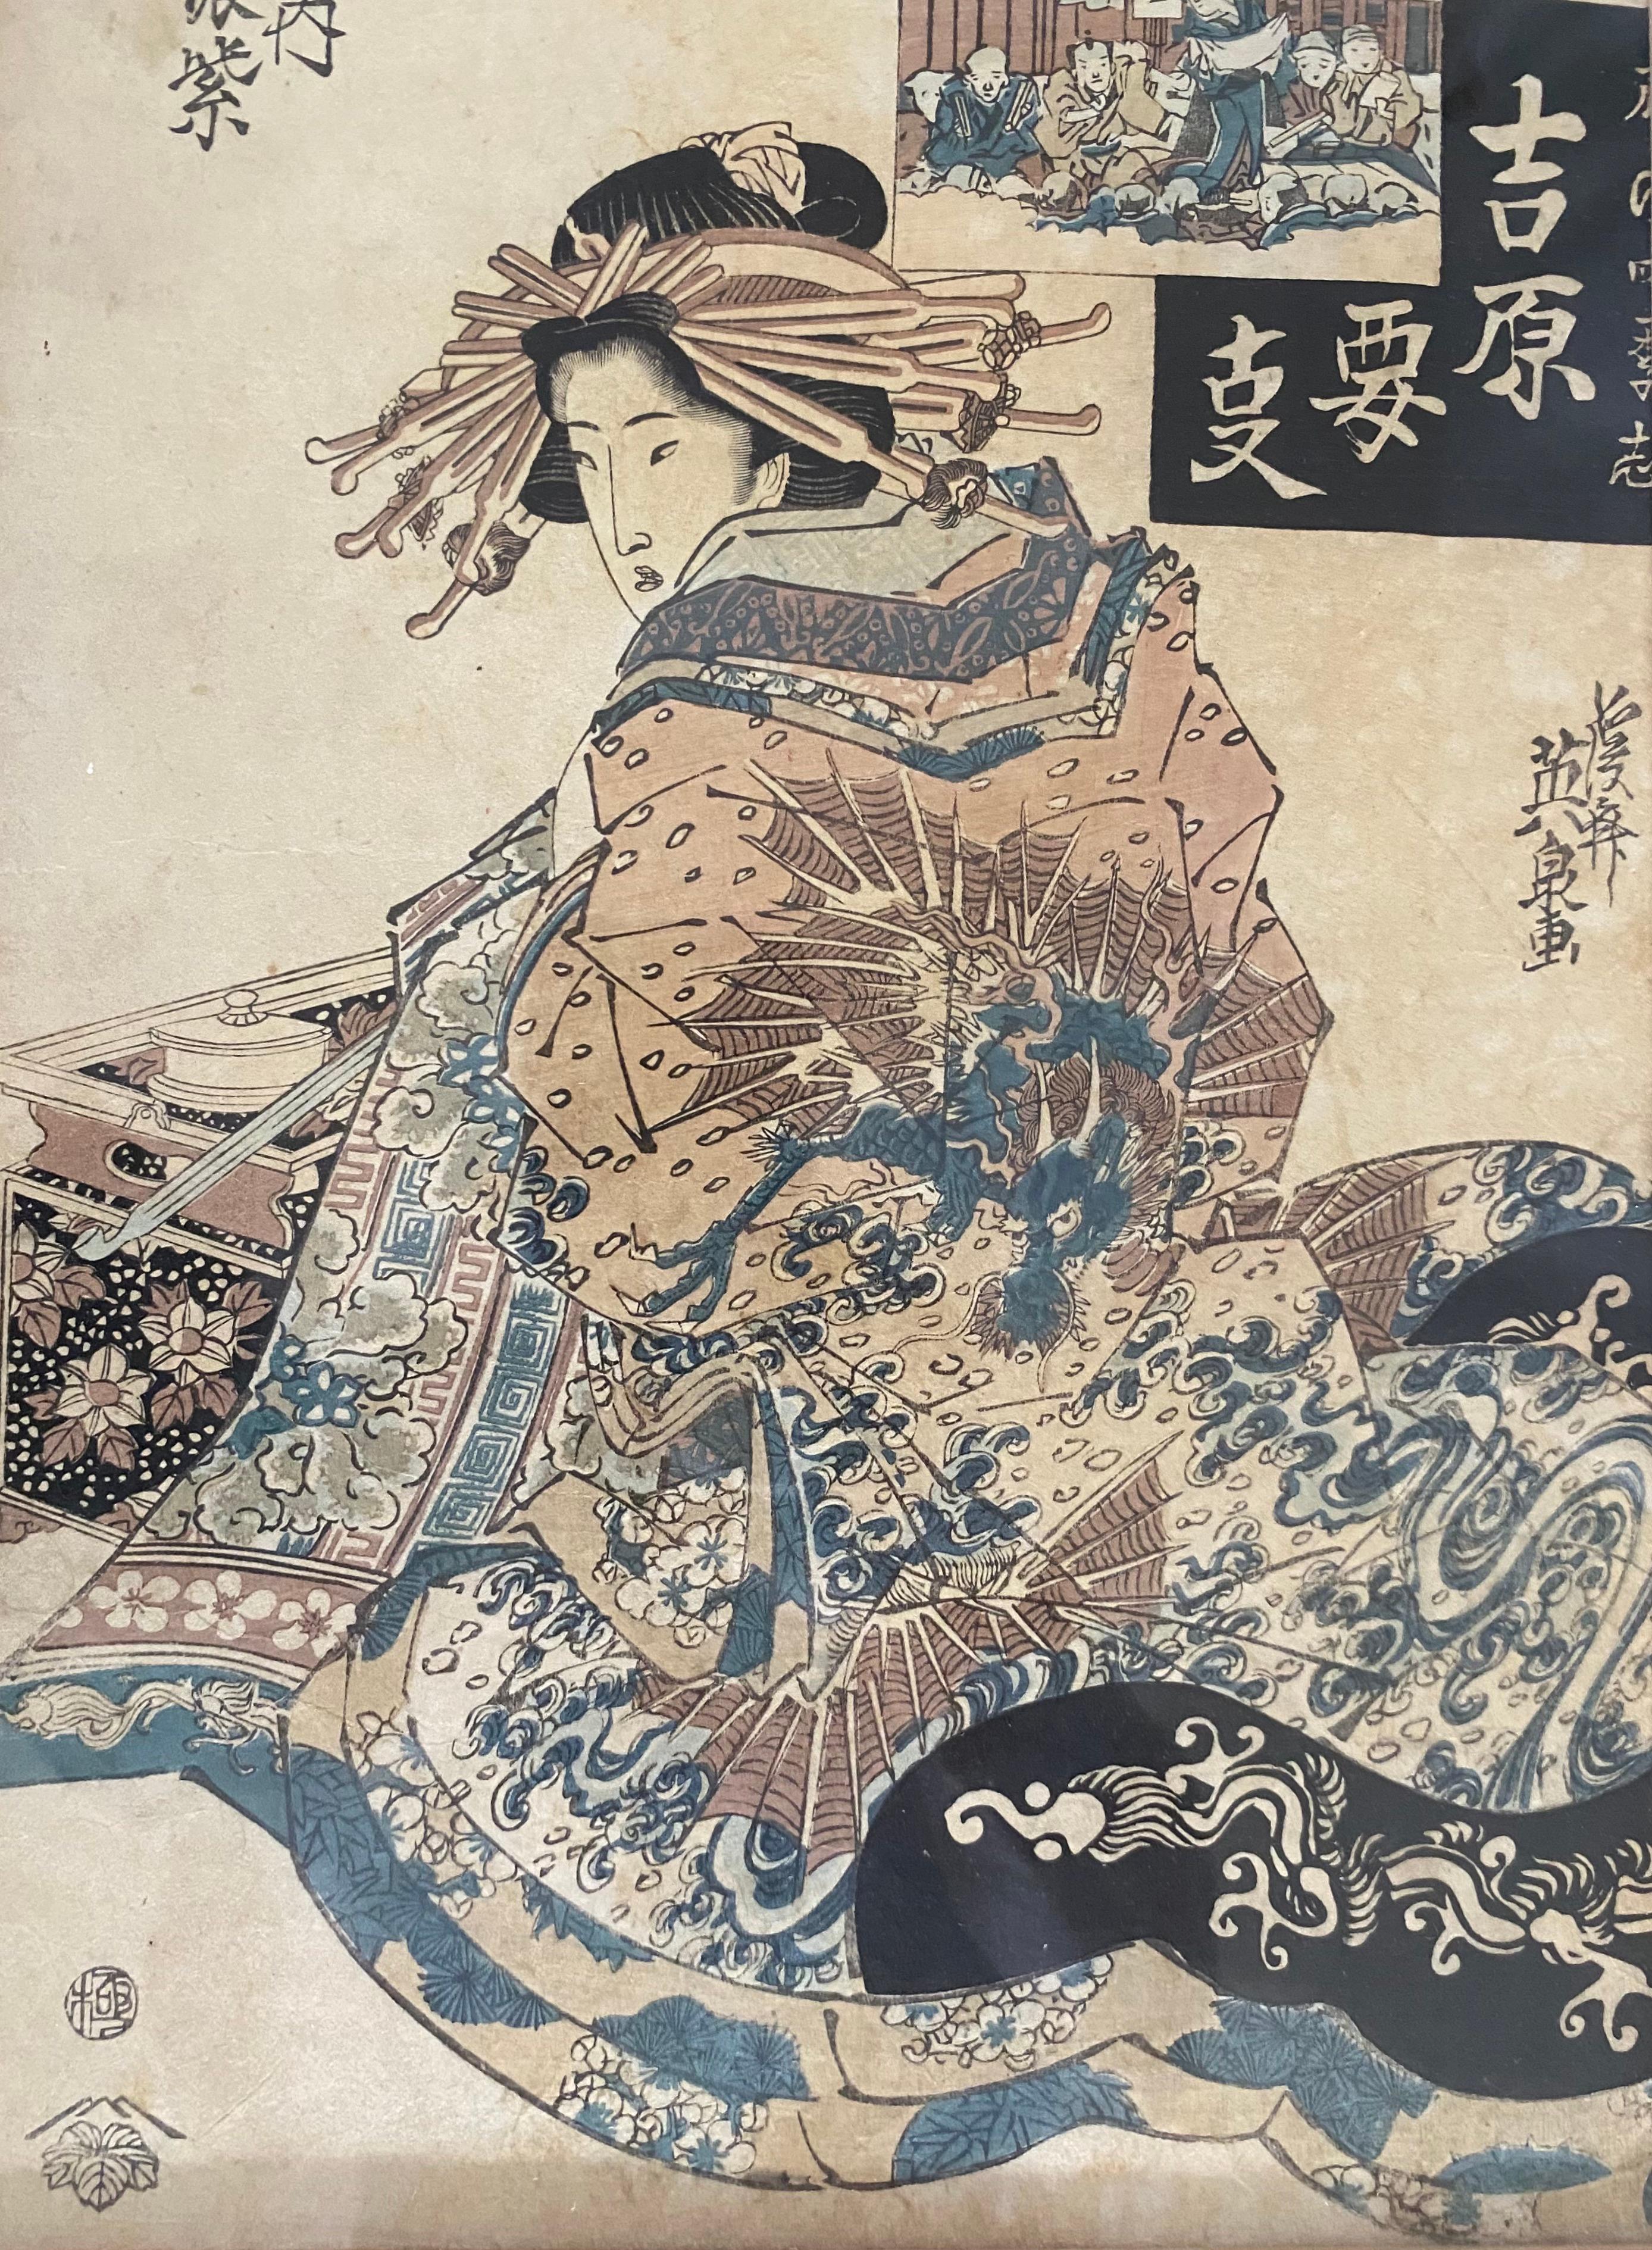 Une belle paire d'estampes japonaises anciennes attribuées à Keisai Eisen (1790-1848), originales et présentées dans des cadres en bois de bambou doré.

A propos de l'Artistics attribué :

Keisai Artistics (1790-1848) était un artiste japonais de